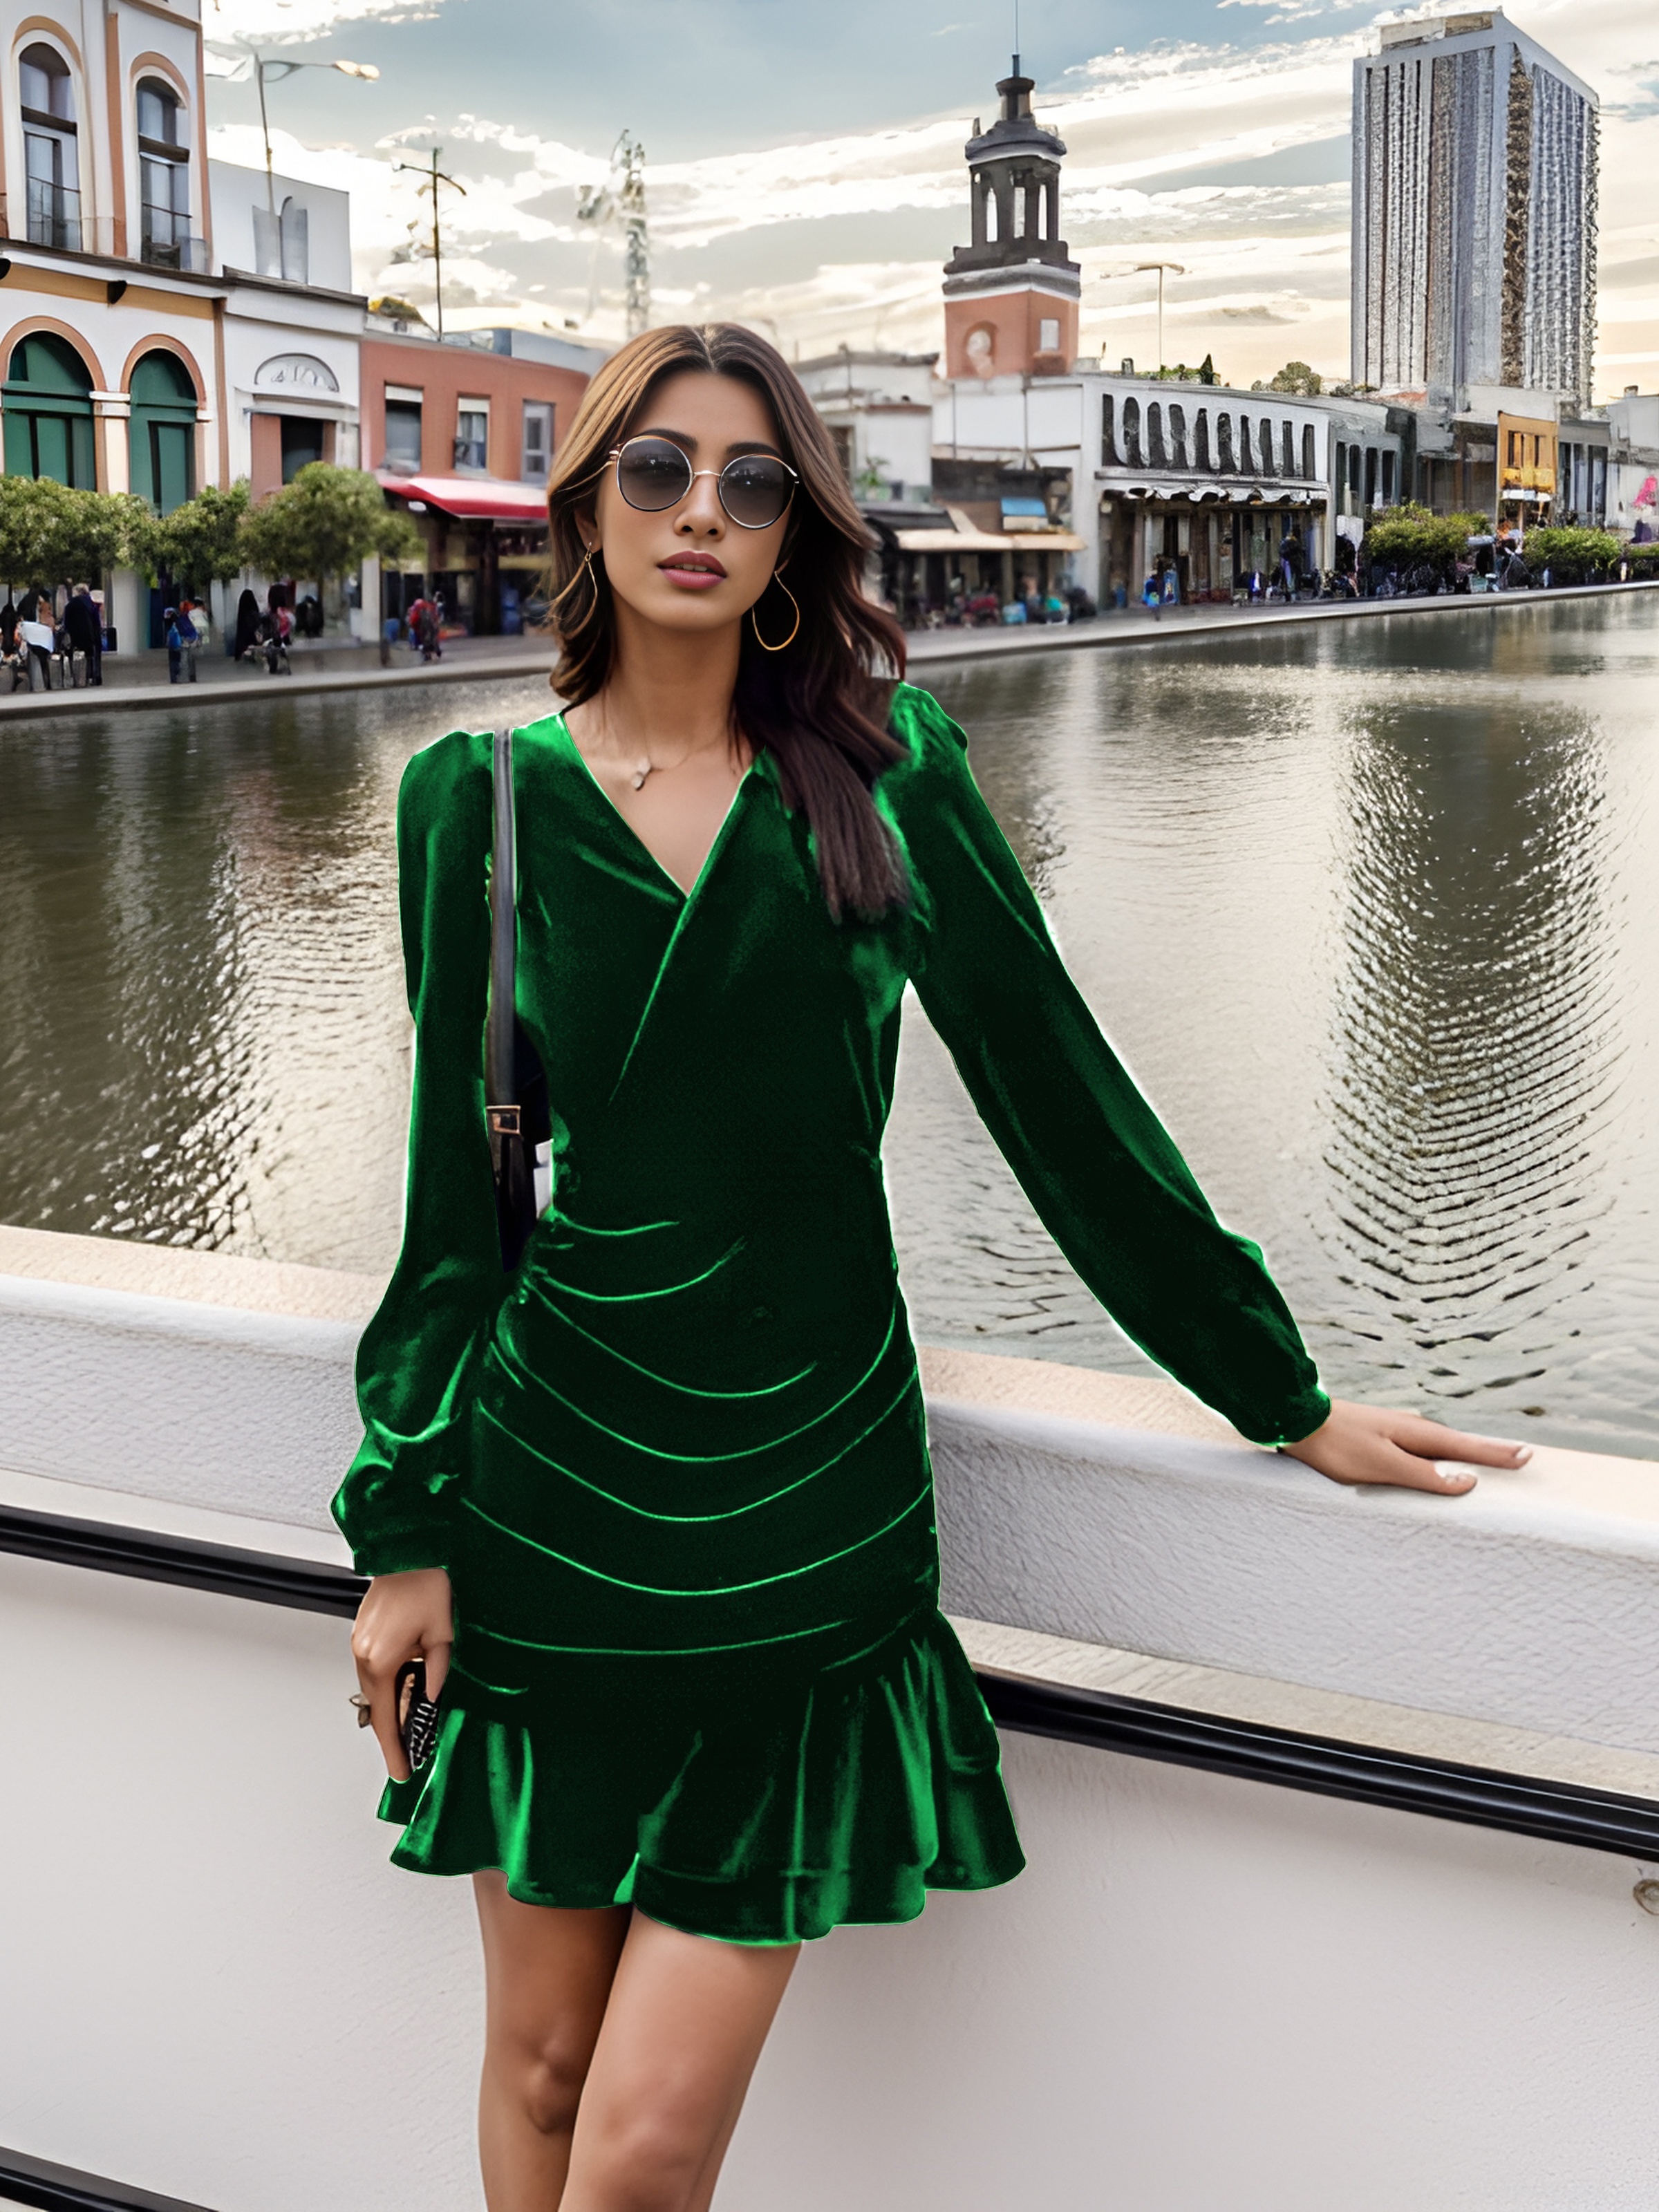 The Green Long Sleeve Velvet Mini Dress - Women's Green Velvet Long Sleeve  Mini Dress, Ruffle Hem - Dark Green - Dresses